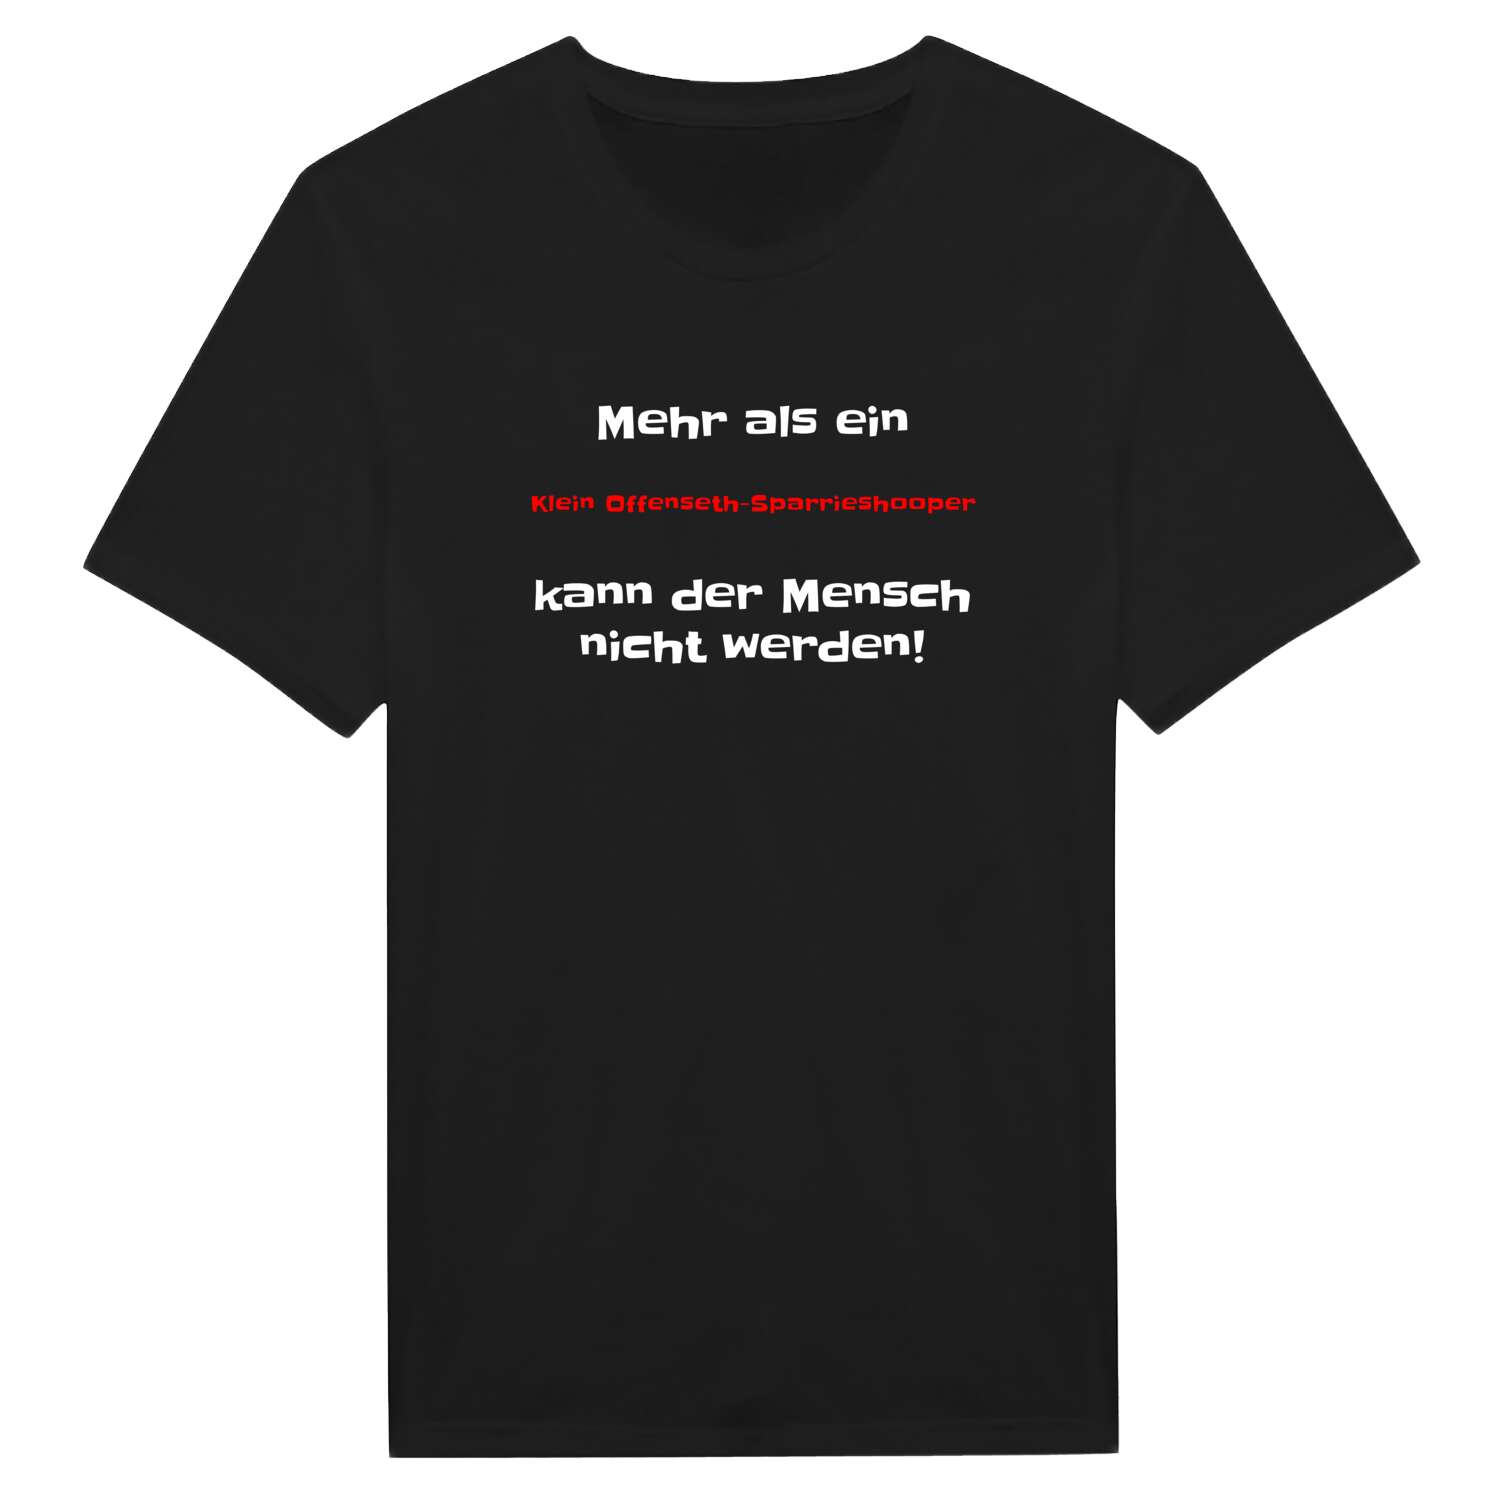 Klein Offenseth-Sparrieshoop T-Shirt »Mehr als ein«